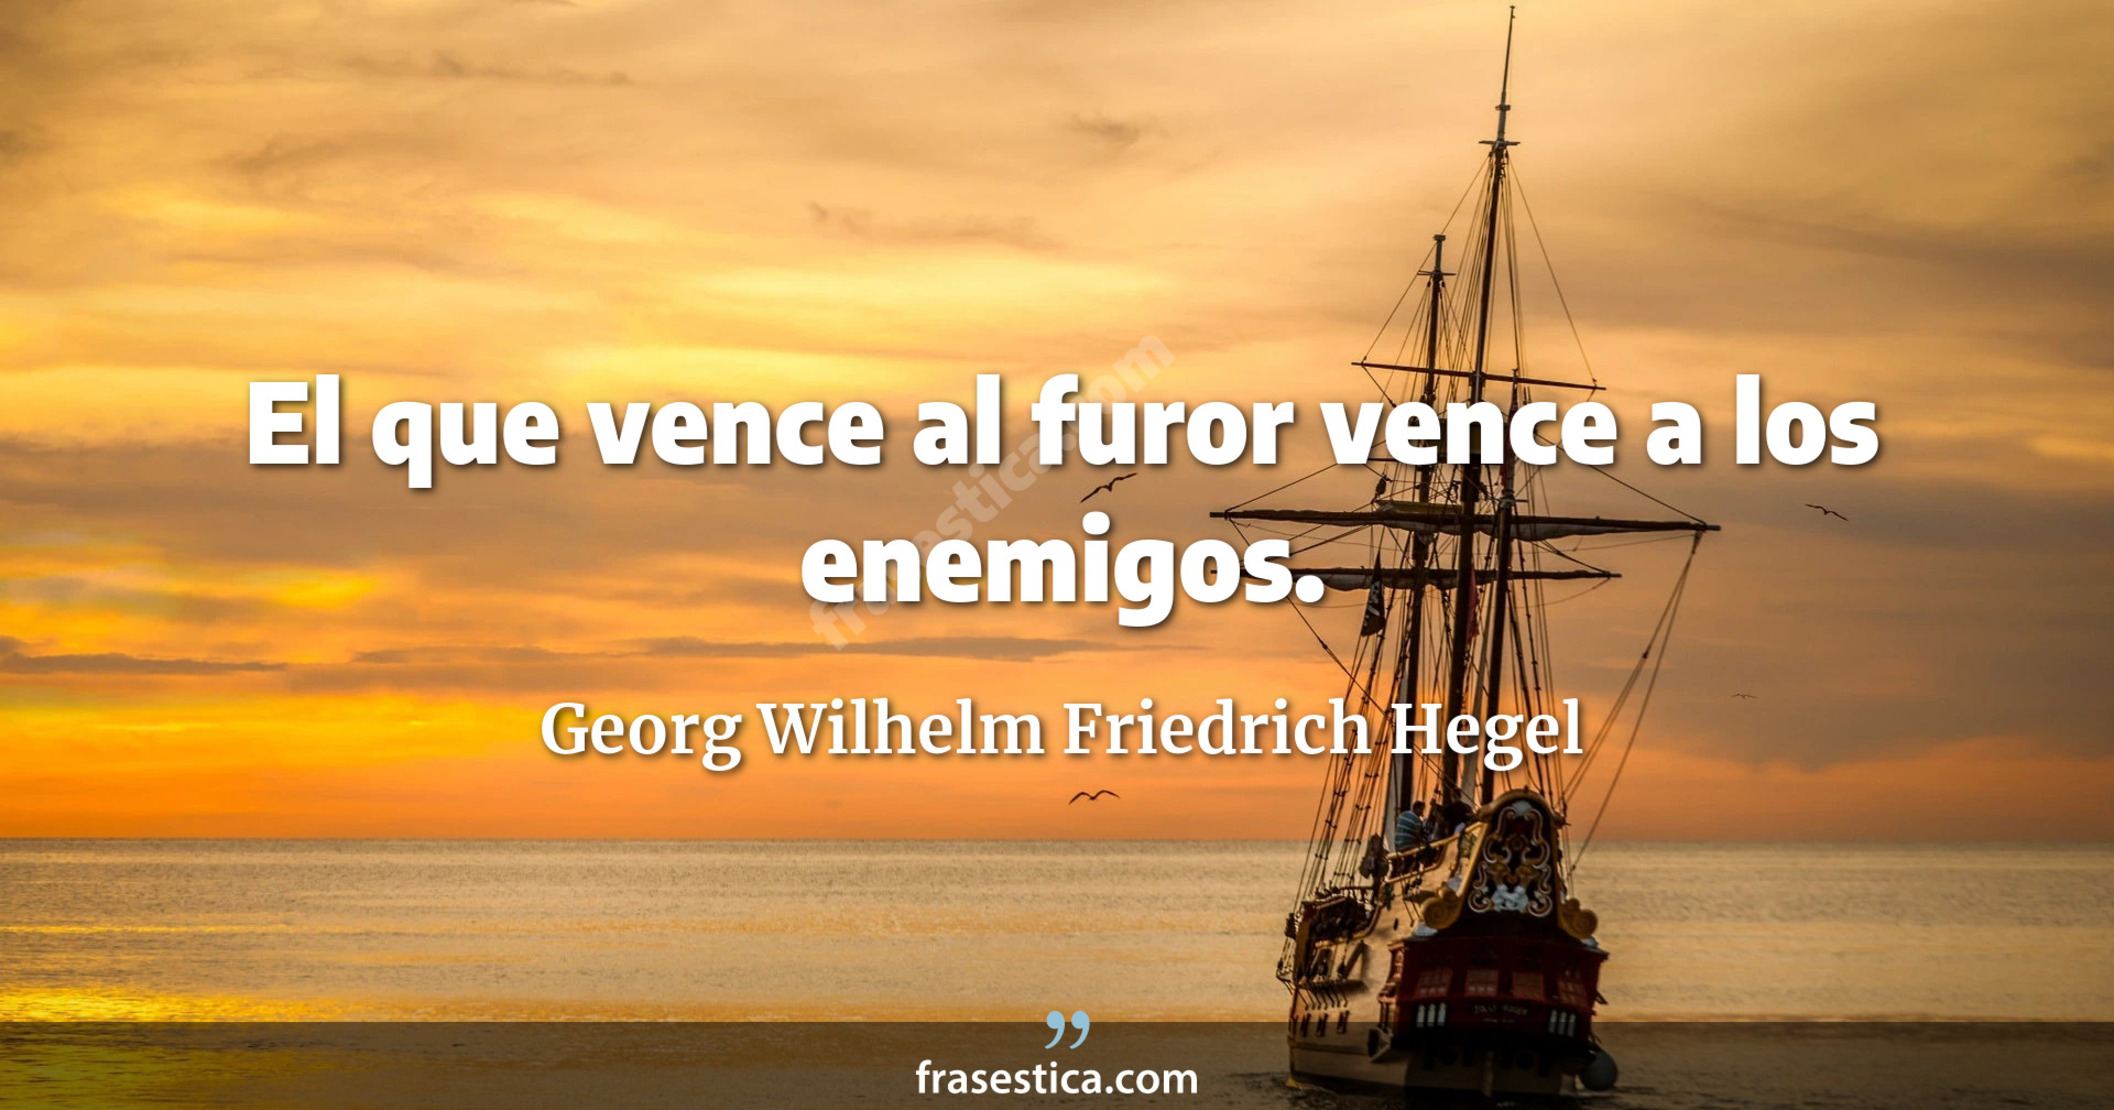 El que vence al furor vence a los enemigos. - Georg Wilhelm Friedrich Hegel